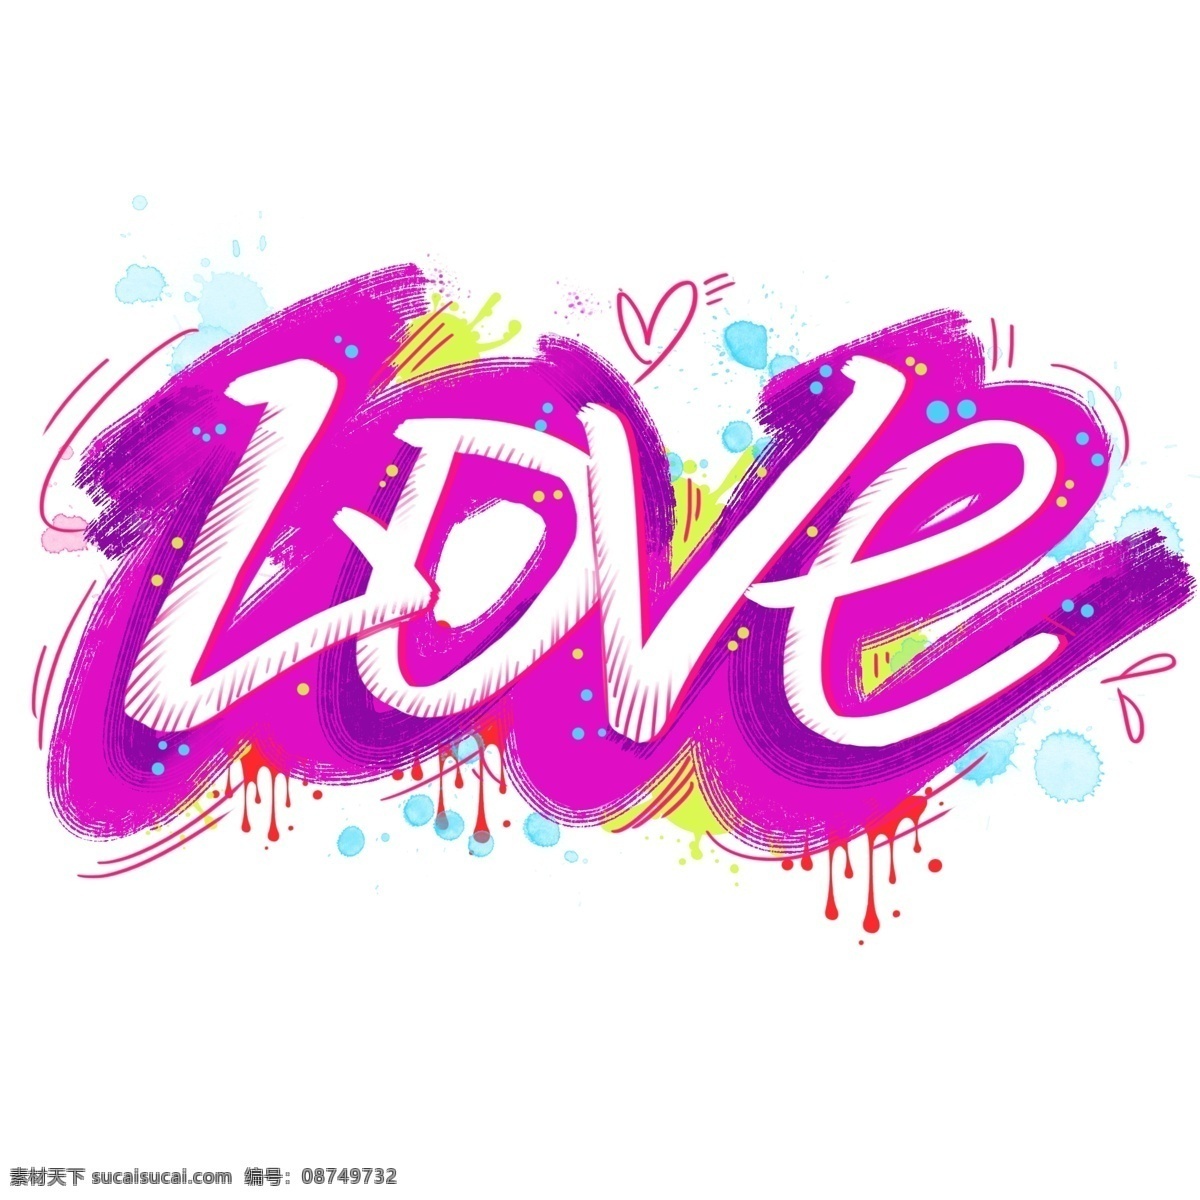 字体 涂鸦 撞 色粉 色卡 通 手绘 个性设计 元素 字体设计 撞色 love 粉色 个性